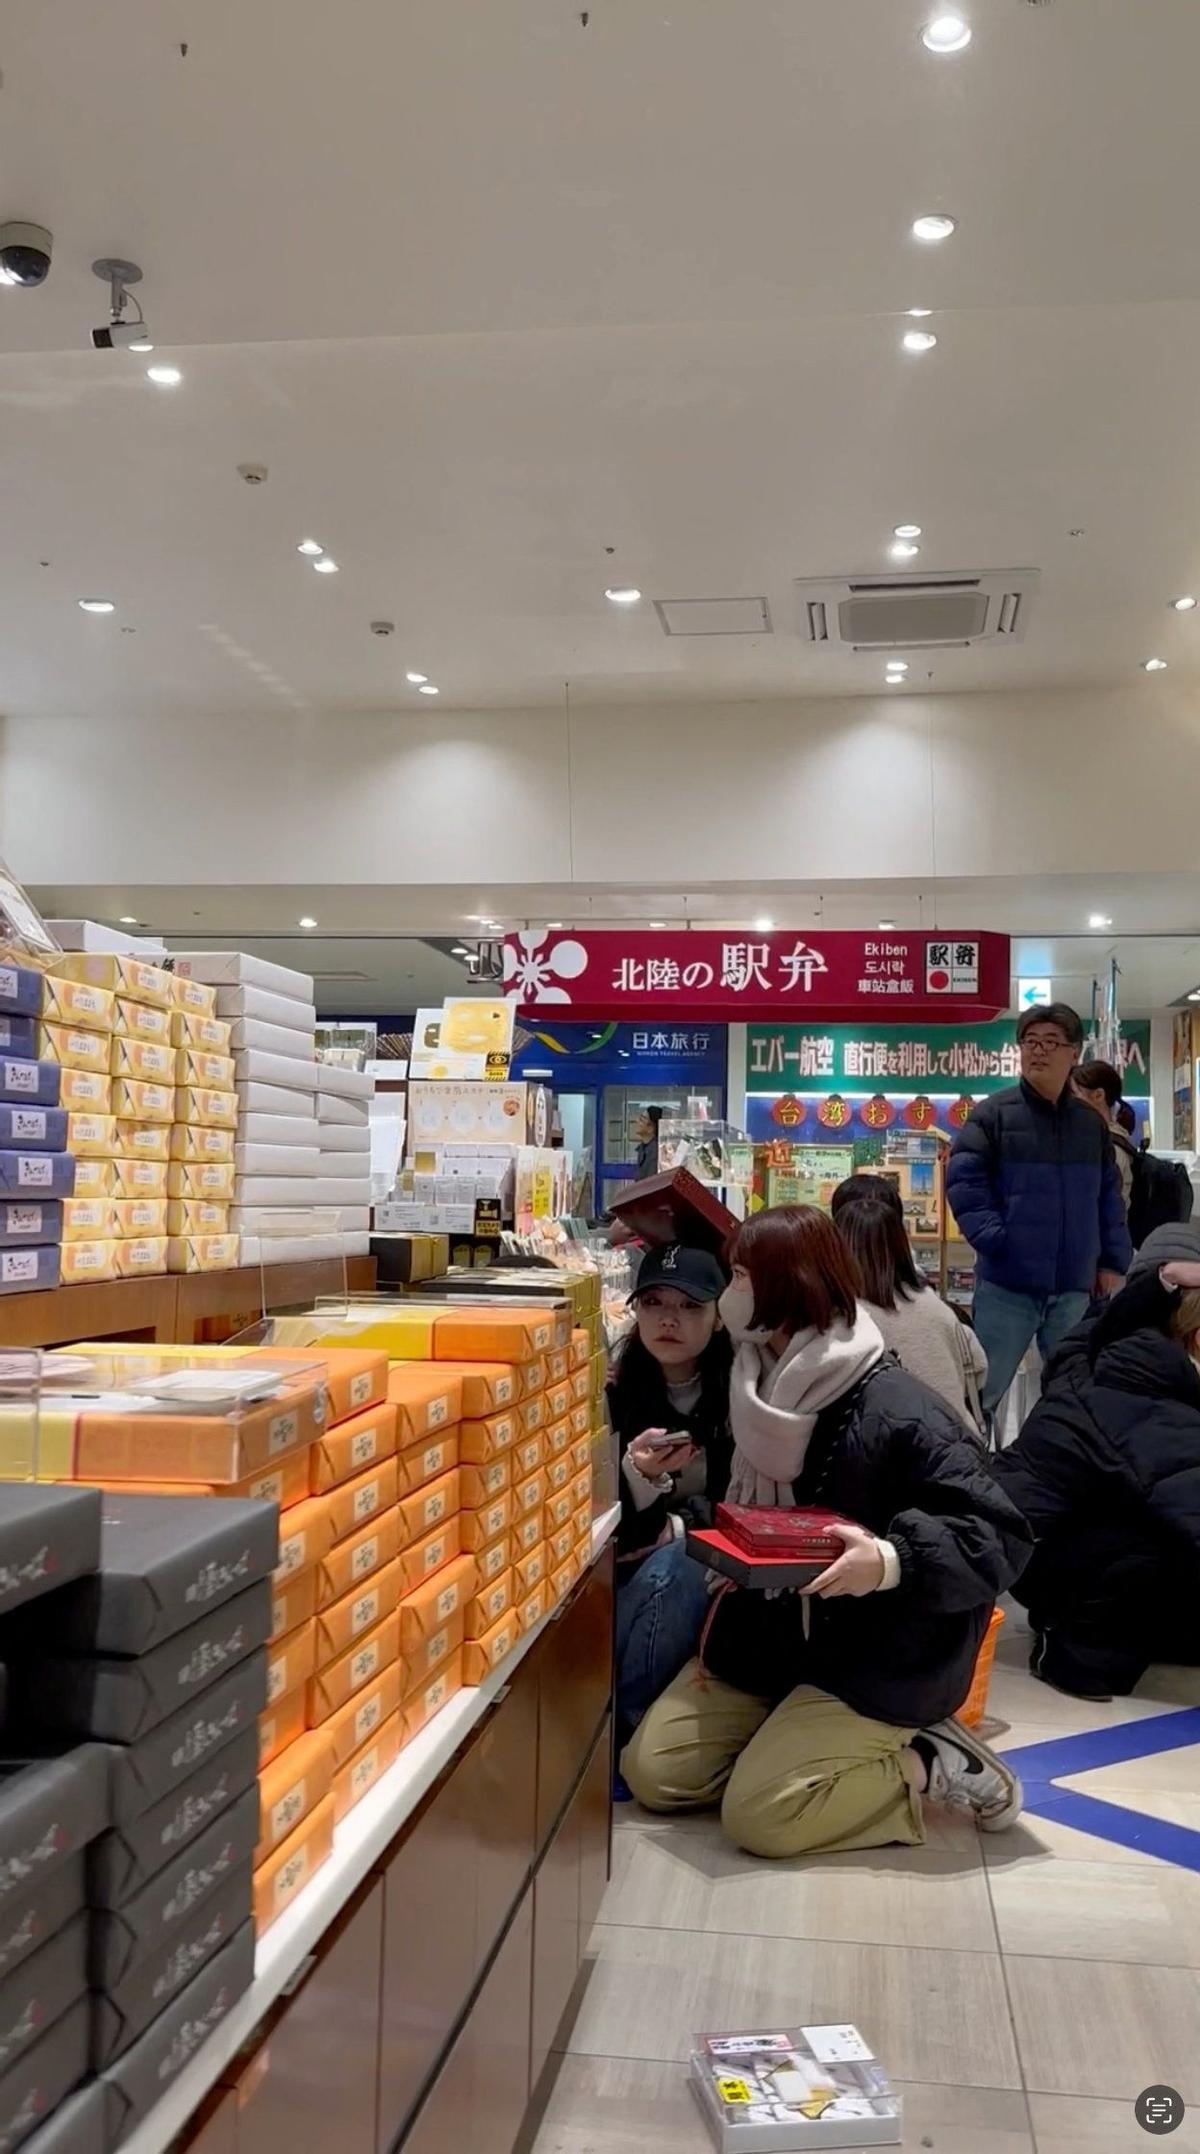 La gente se sienta en el suelo mientras los artículos caen de los estantes en una tienda mientras ocurre un terremoto, en Kanazawa, Ishikawa, Japón